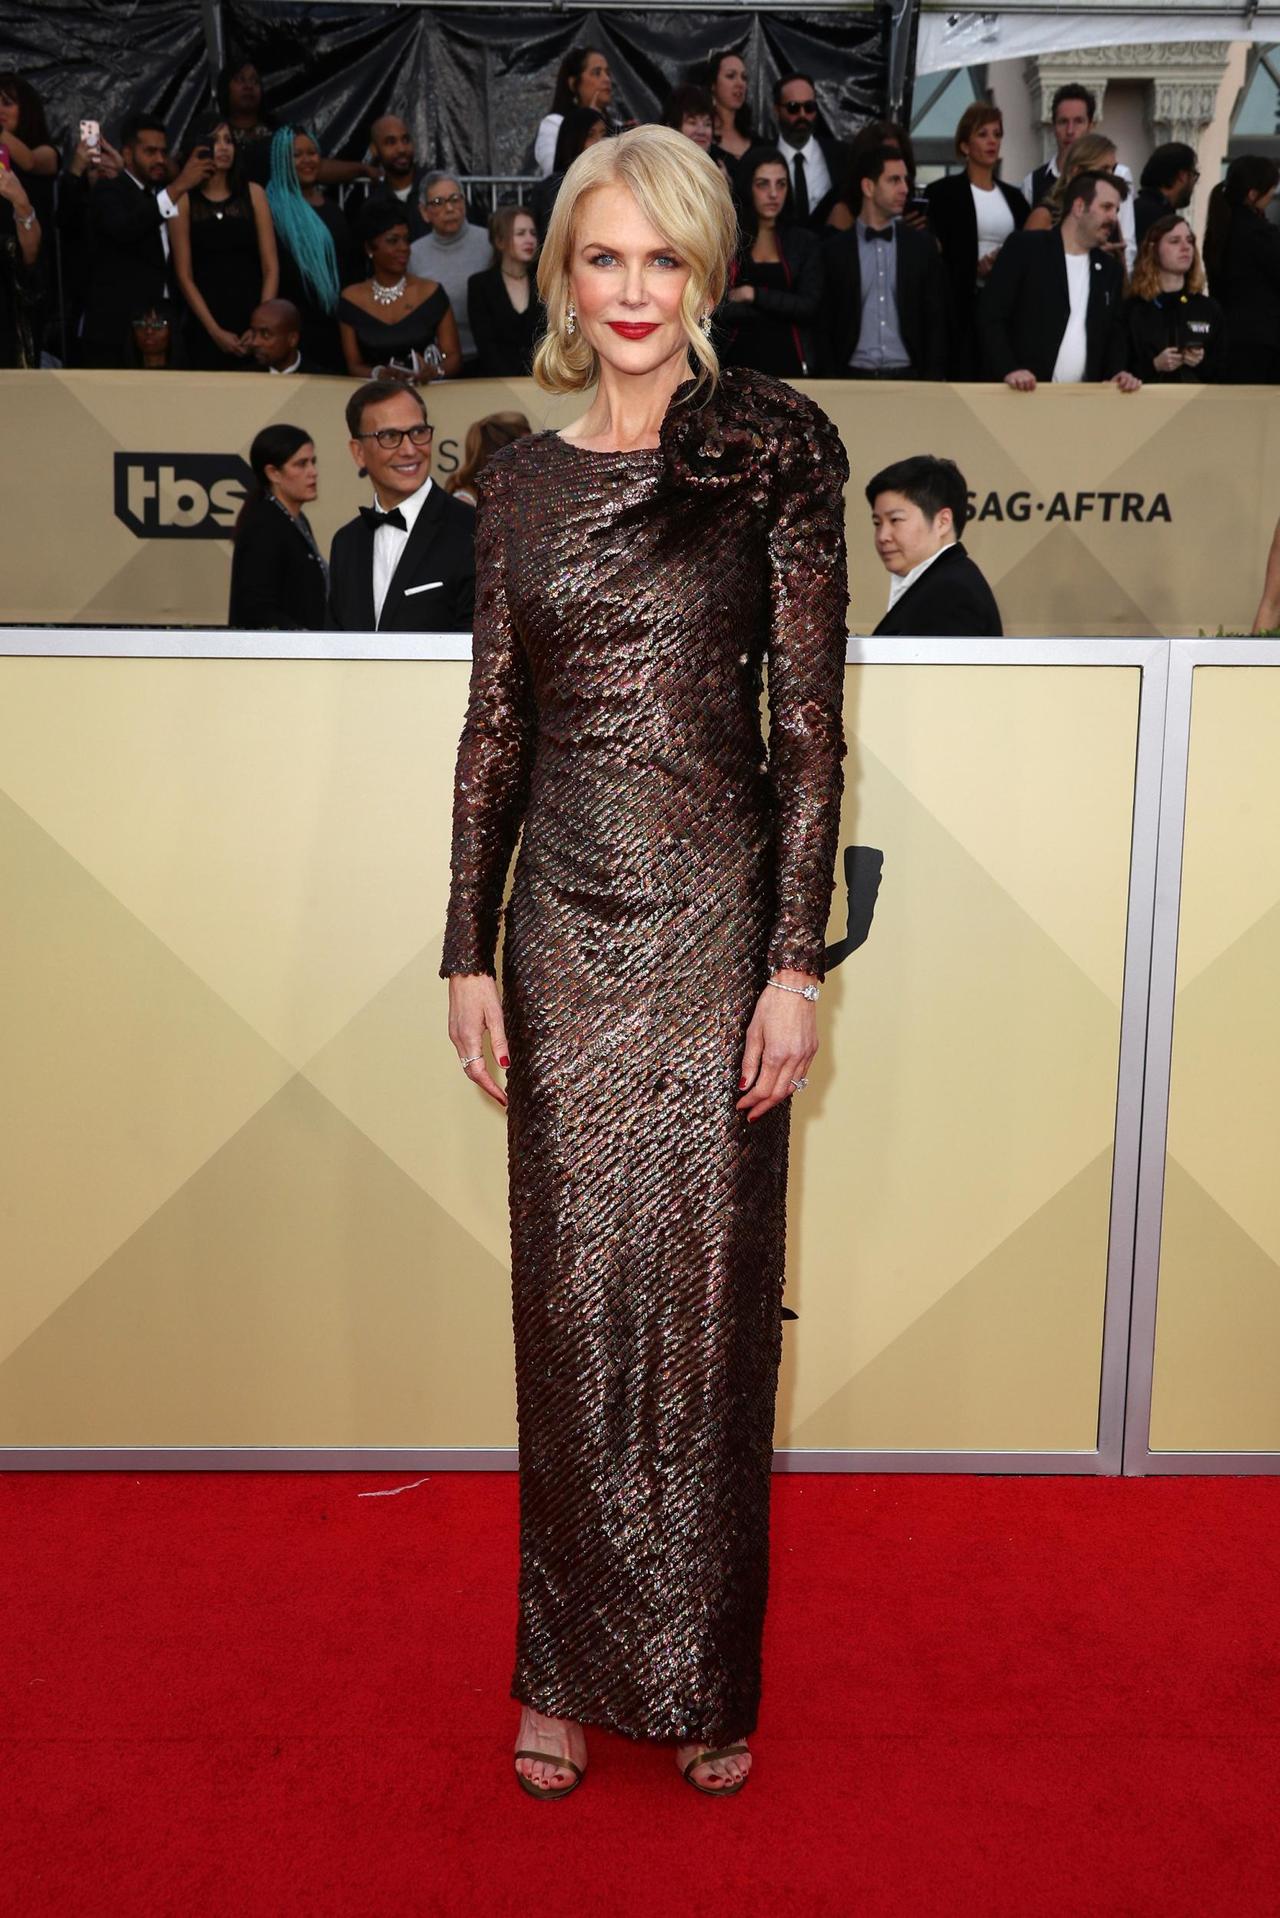 A salvo. La actriz Nicole Kidman asegura que gracias a su matrimonio con Tom, evitó que ella fuera acosada en Hollywood. (ARCHIVO)